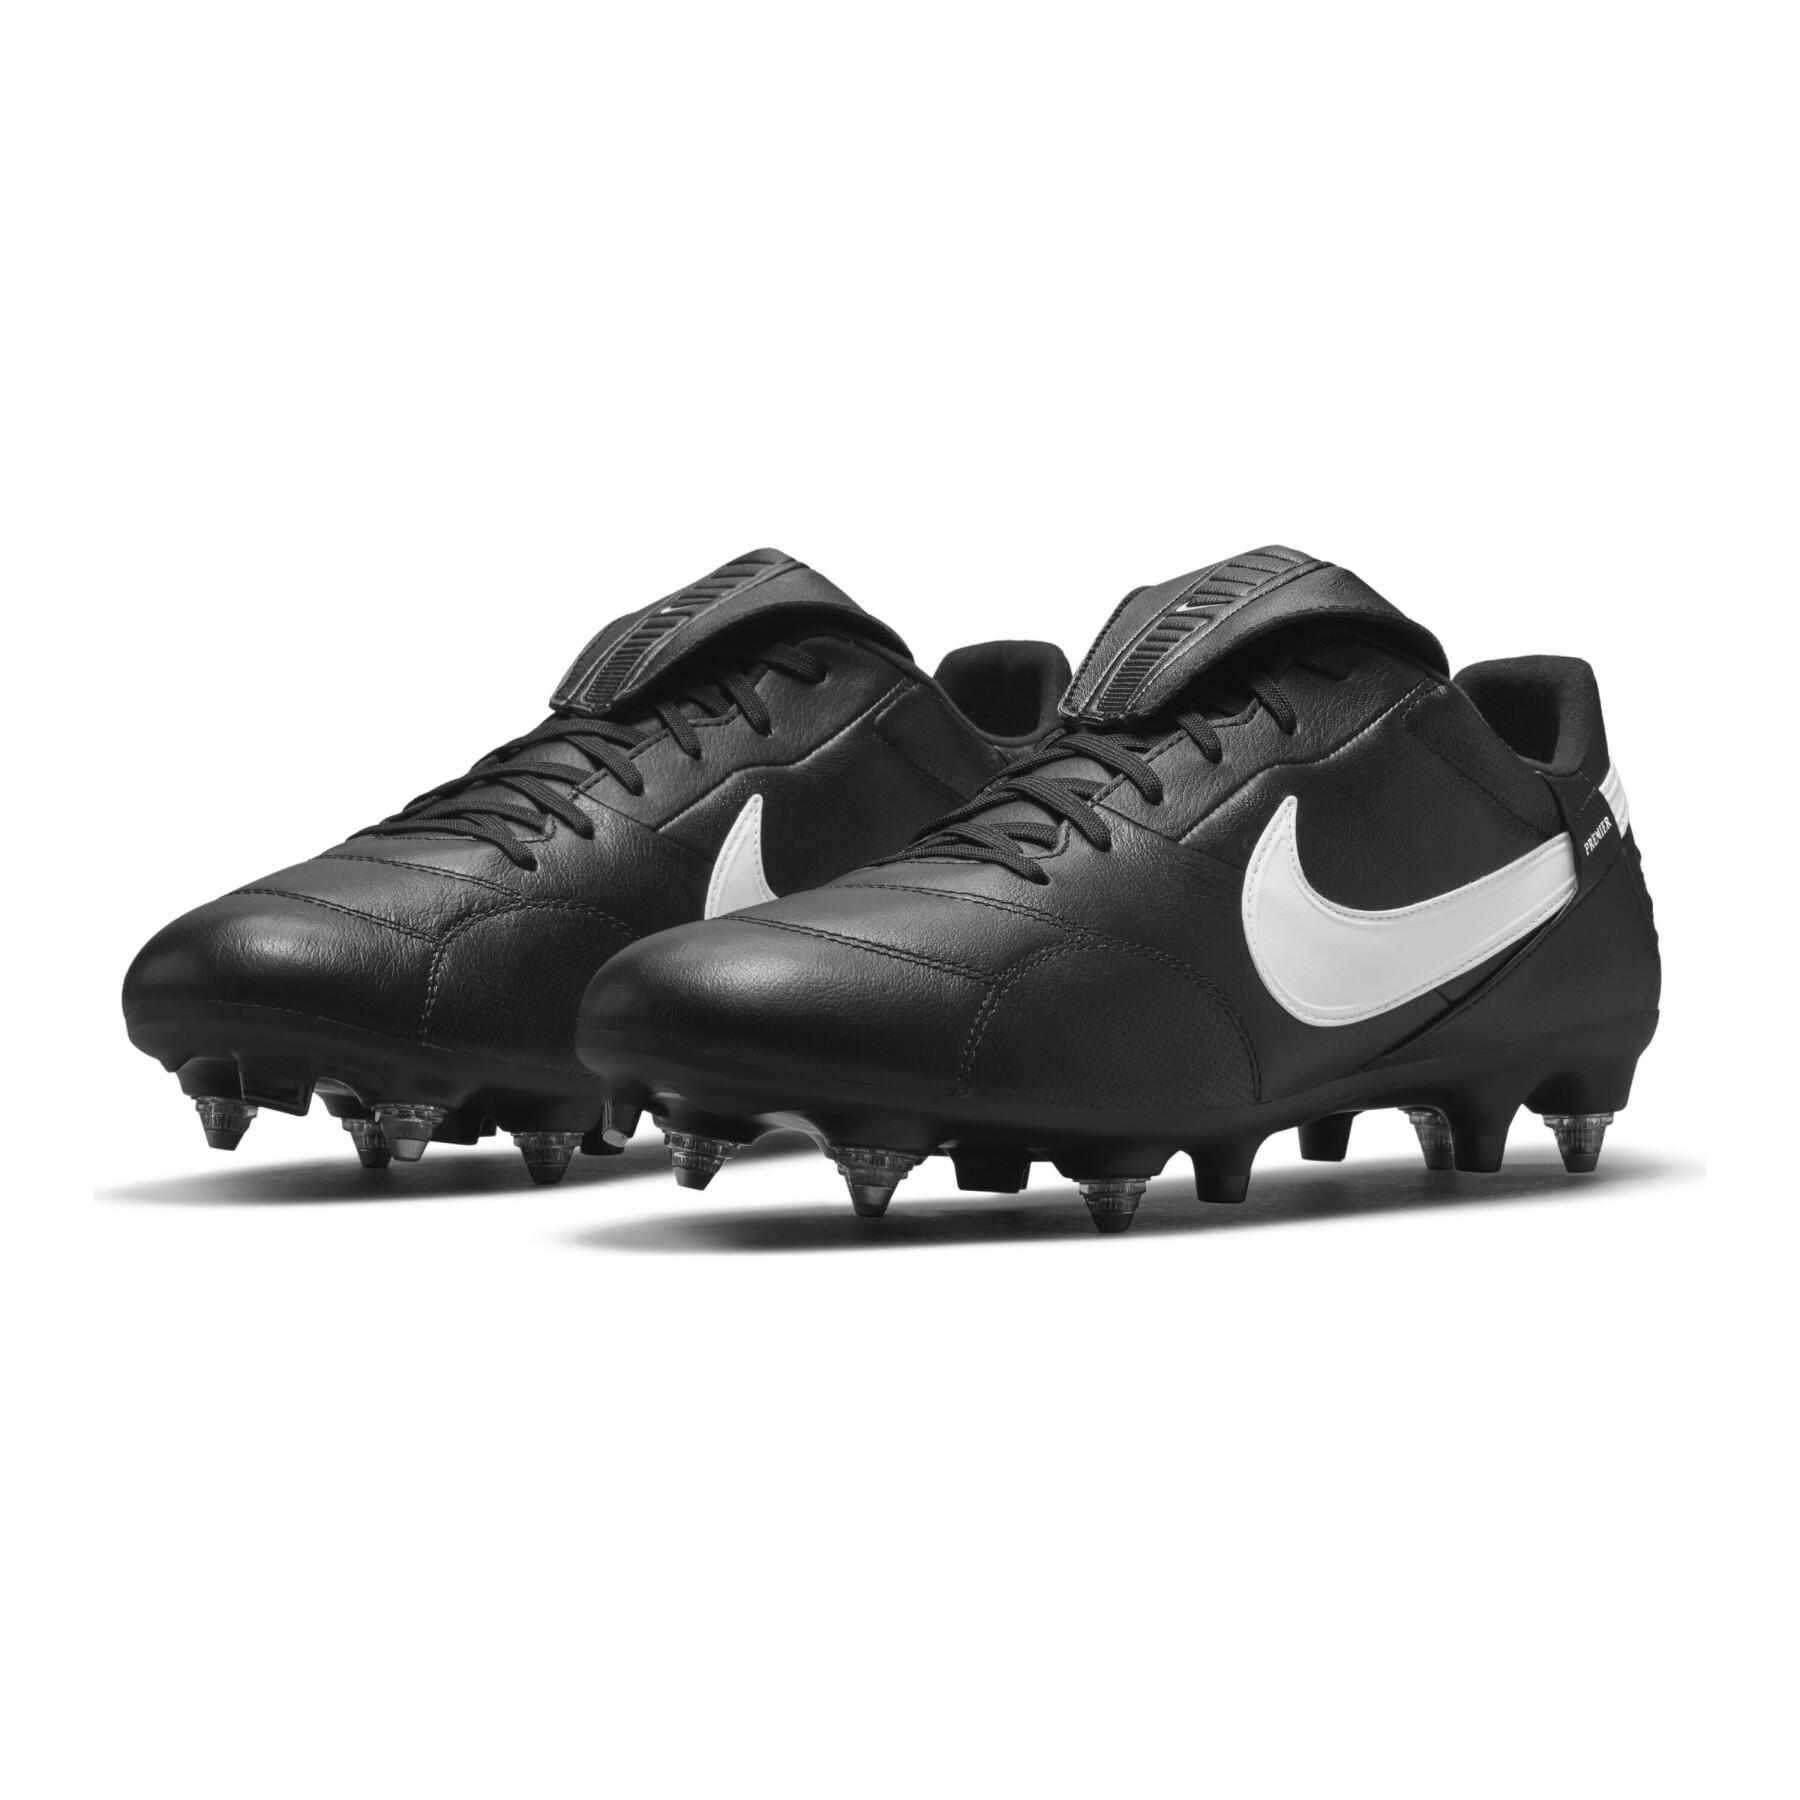 Scarpe da calcio Nike Premier 3 SG-Pro Anti-Clog Traction